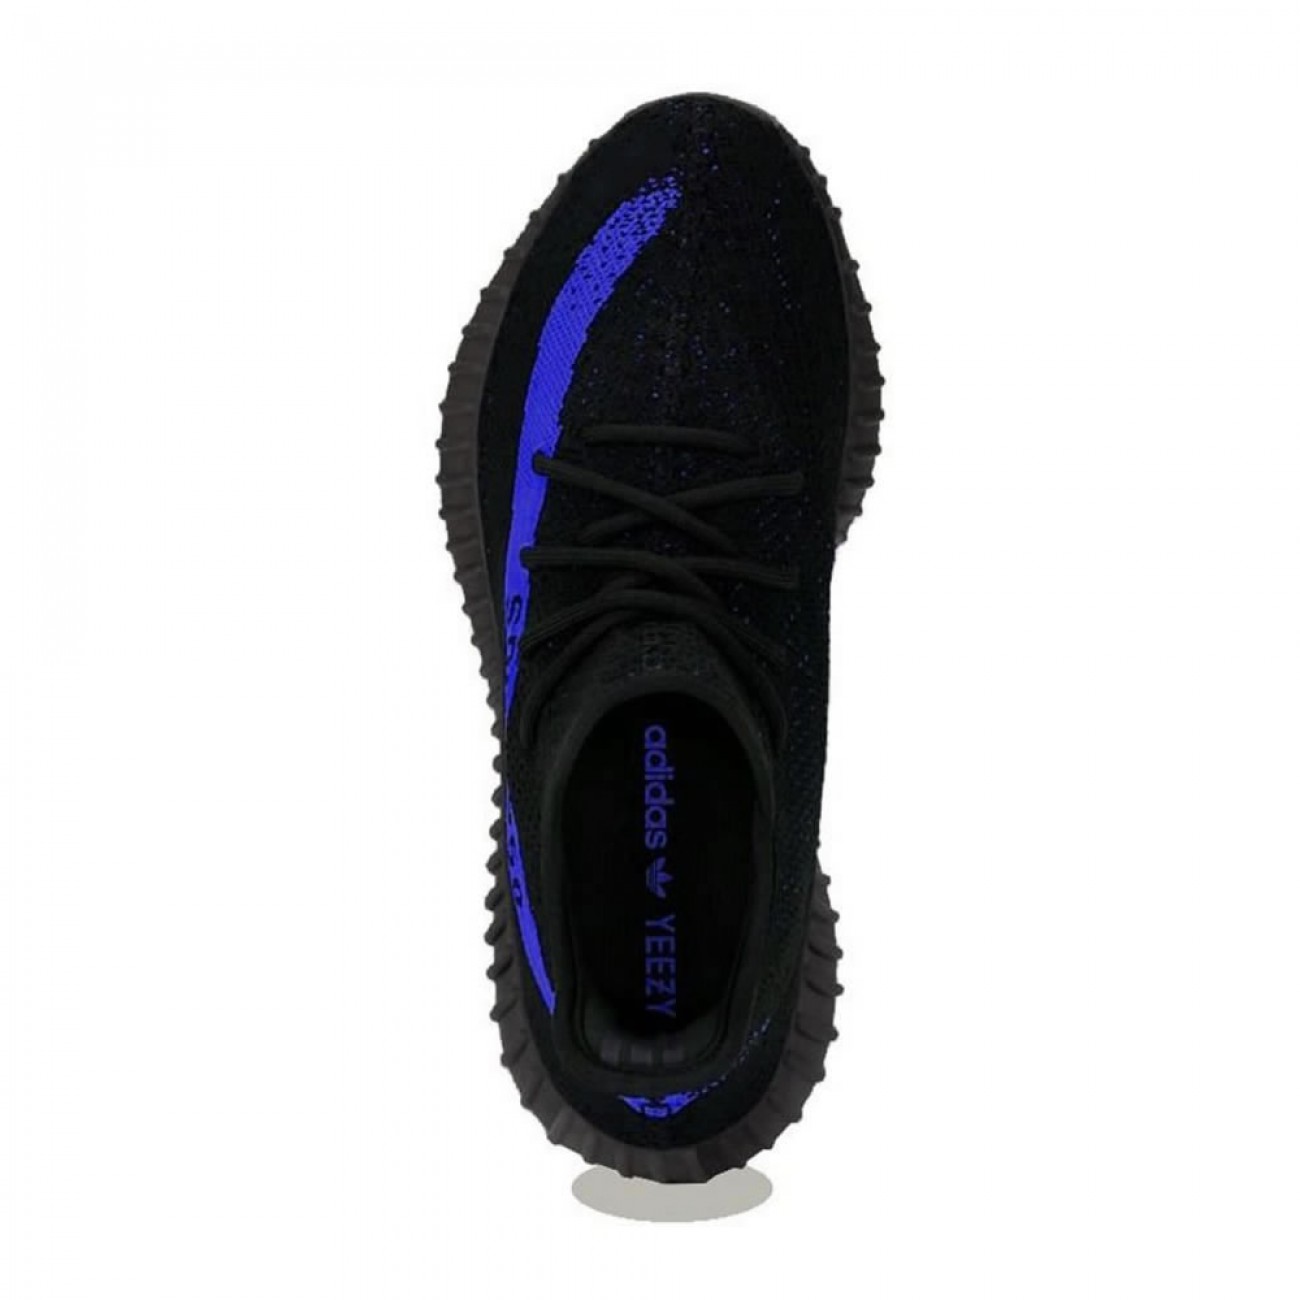 adidas Yeezy Boost 350 V2 "Dazzling Blue" GY7164